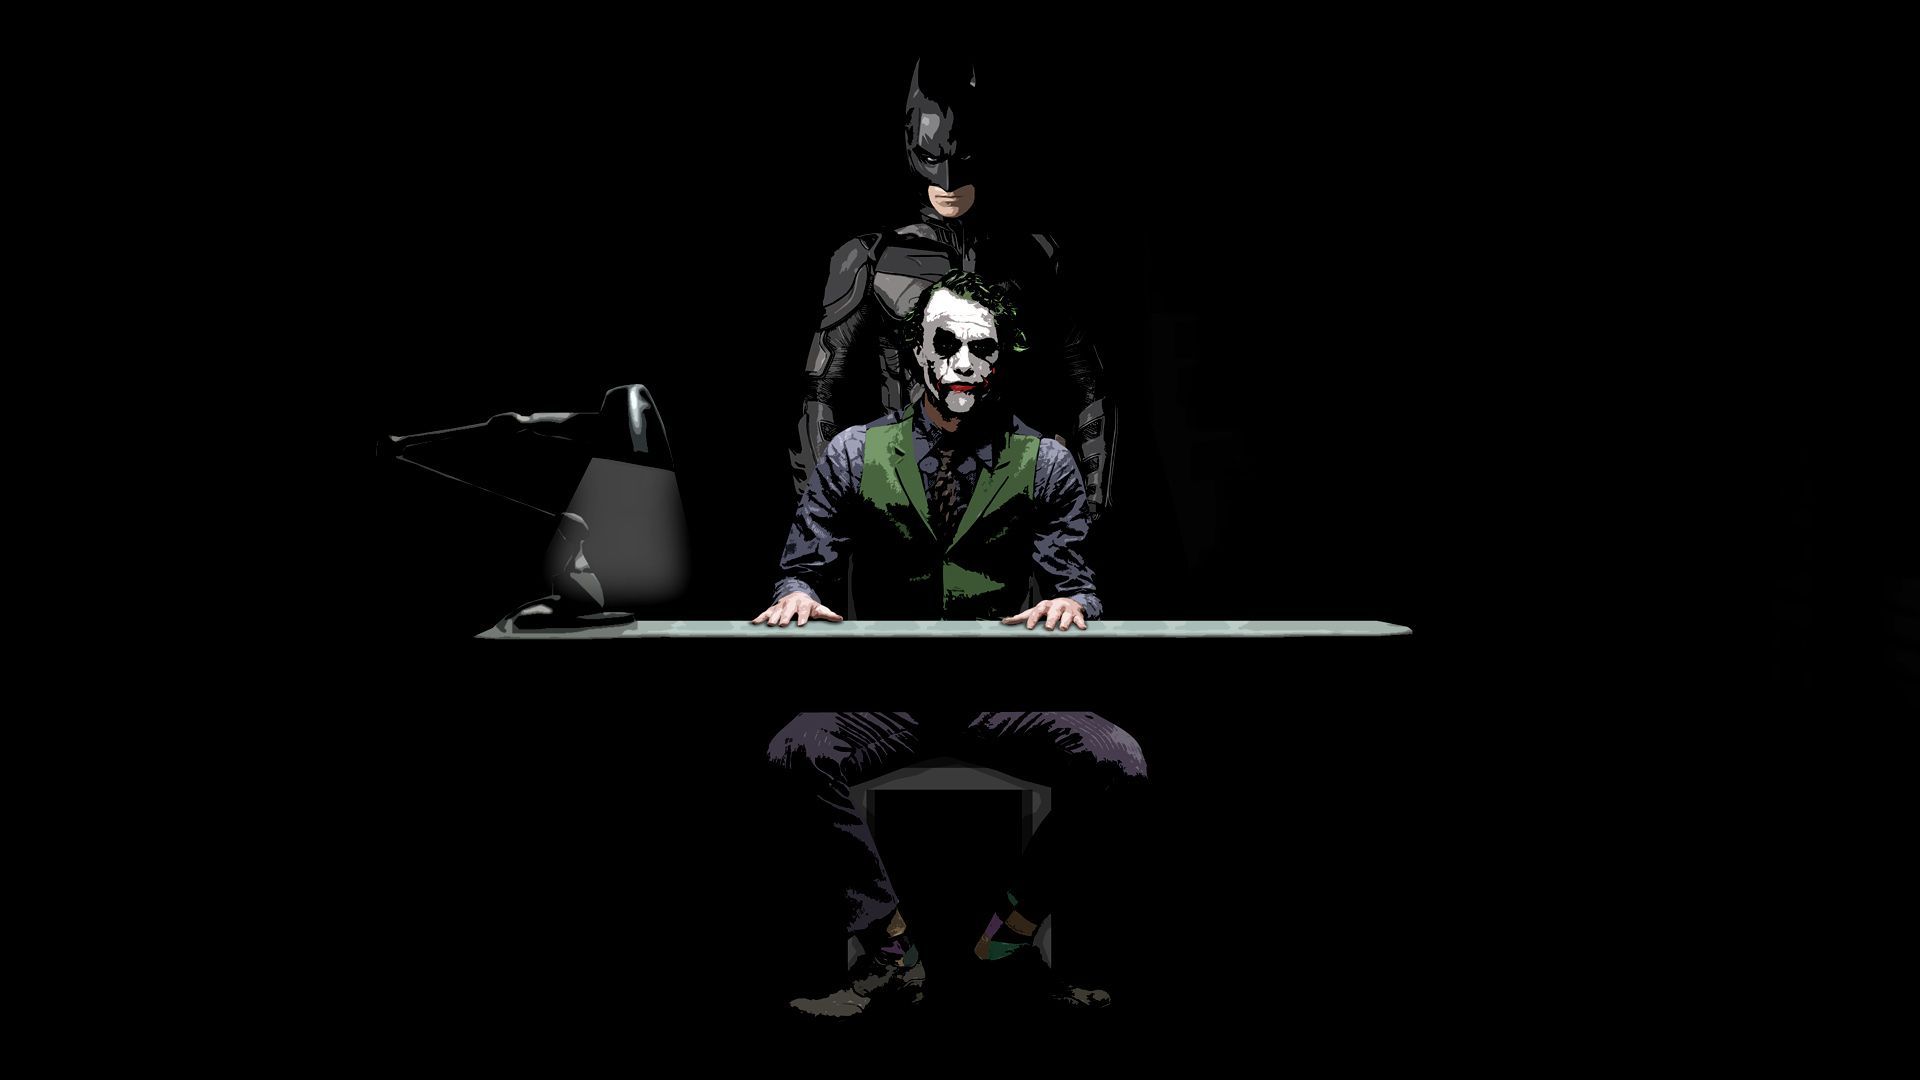 Batman And Joker HD Wallpaper | 1920x1080 | ID:28182